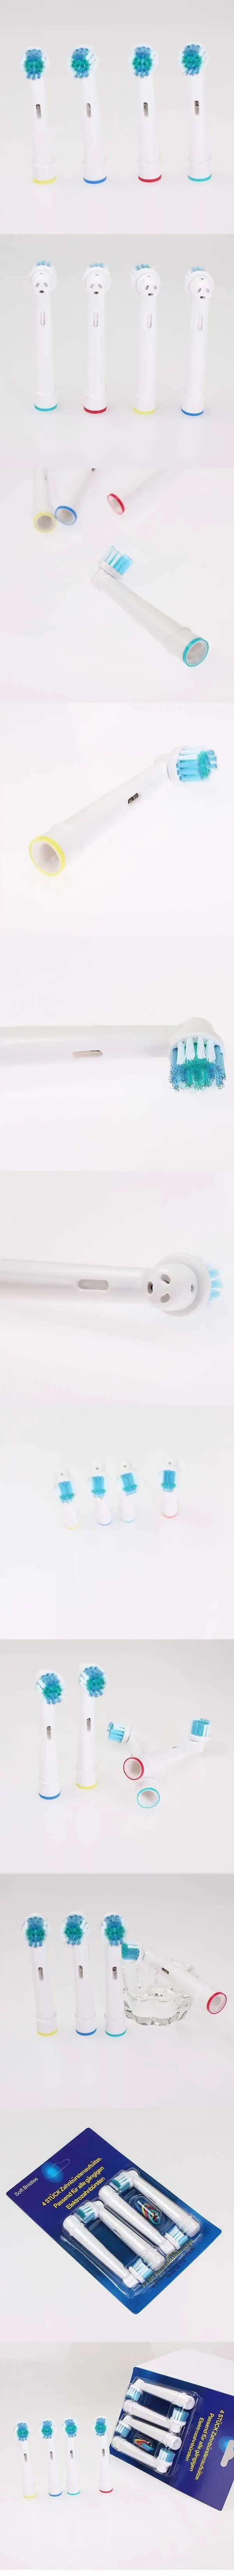 CrossAction Замена головка электрической зубной щетки для OralB Teethbrush A